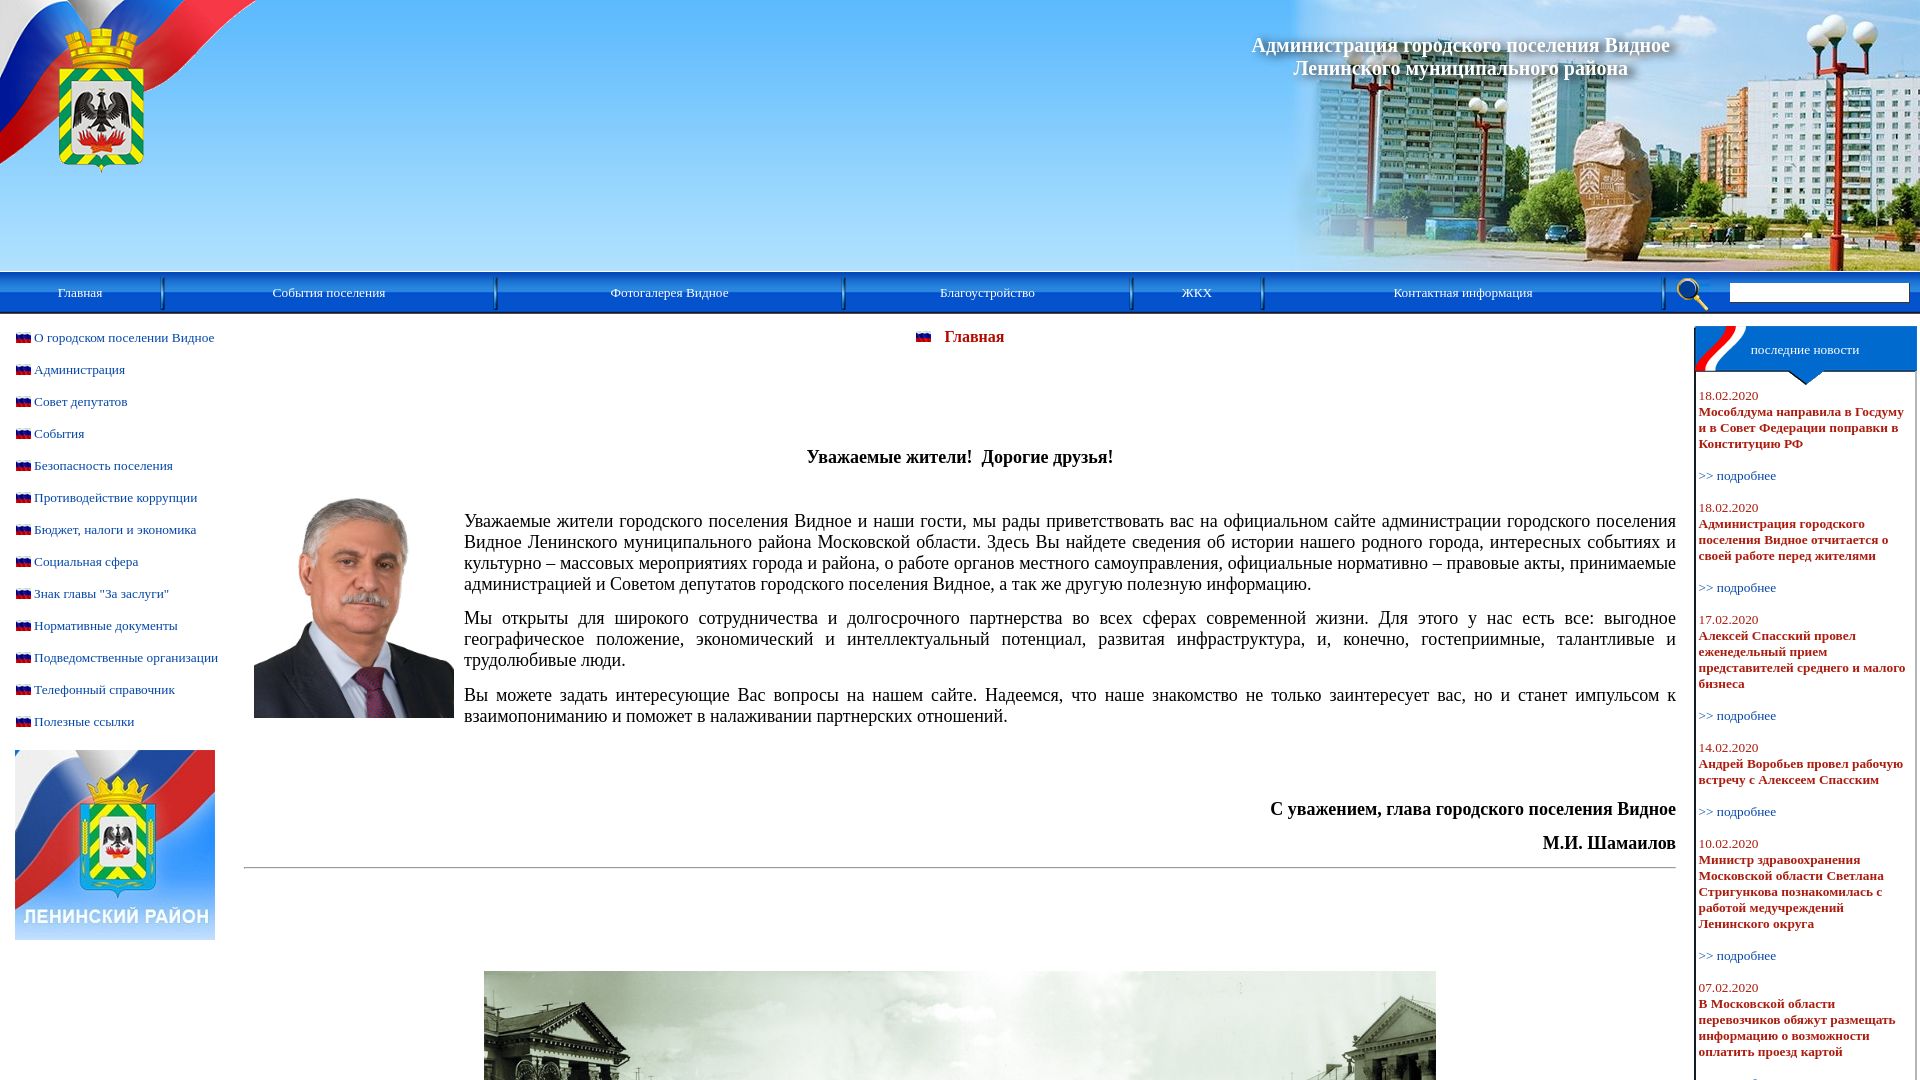 Website status albonumismatico.ru is   ONLINE